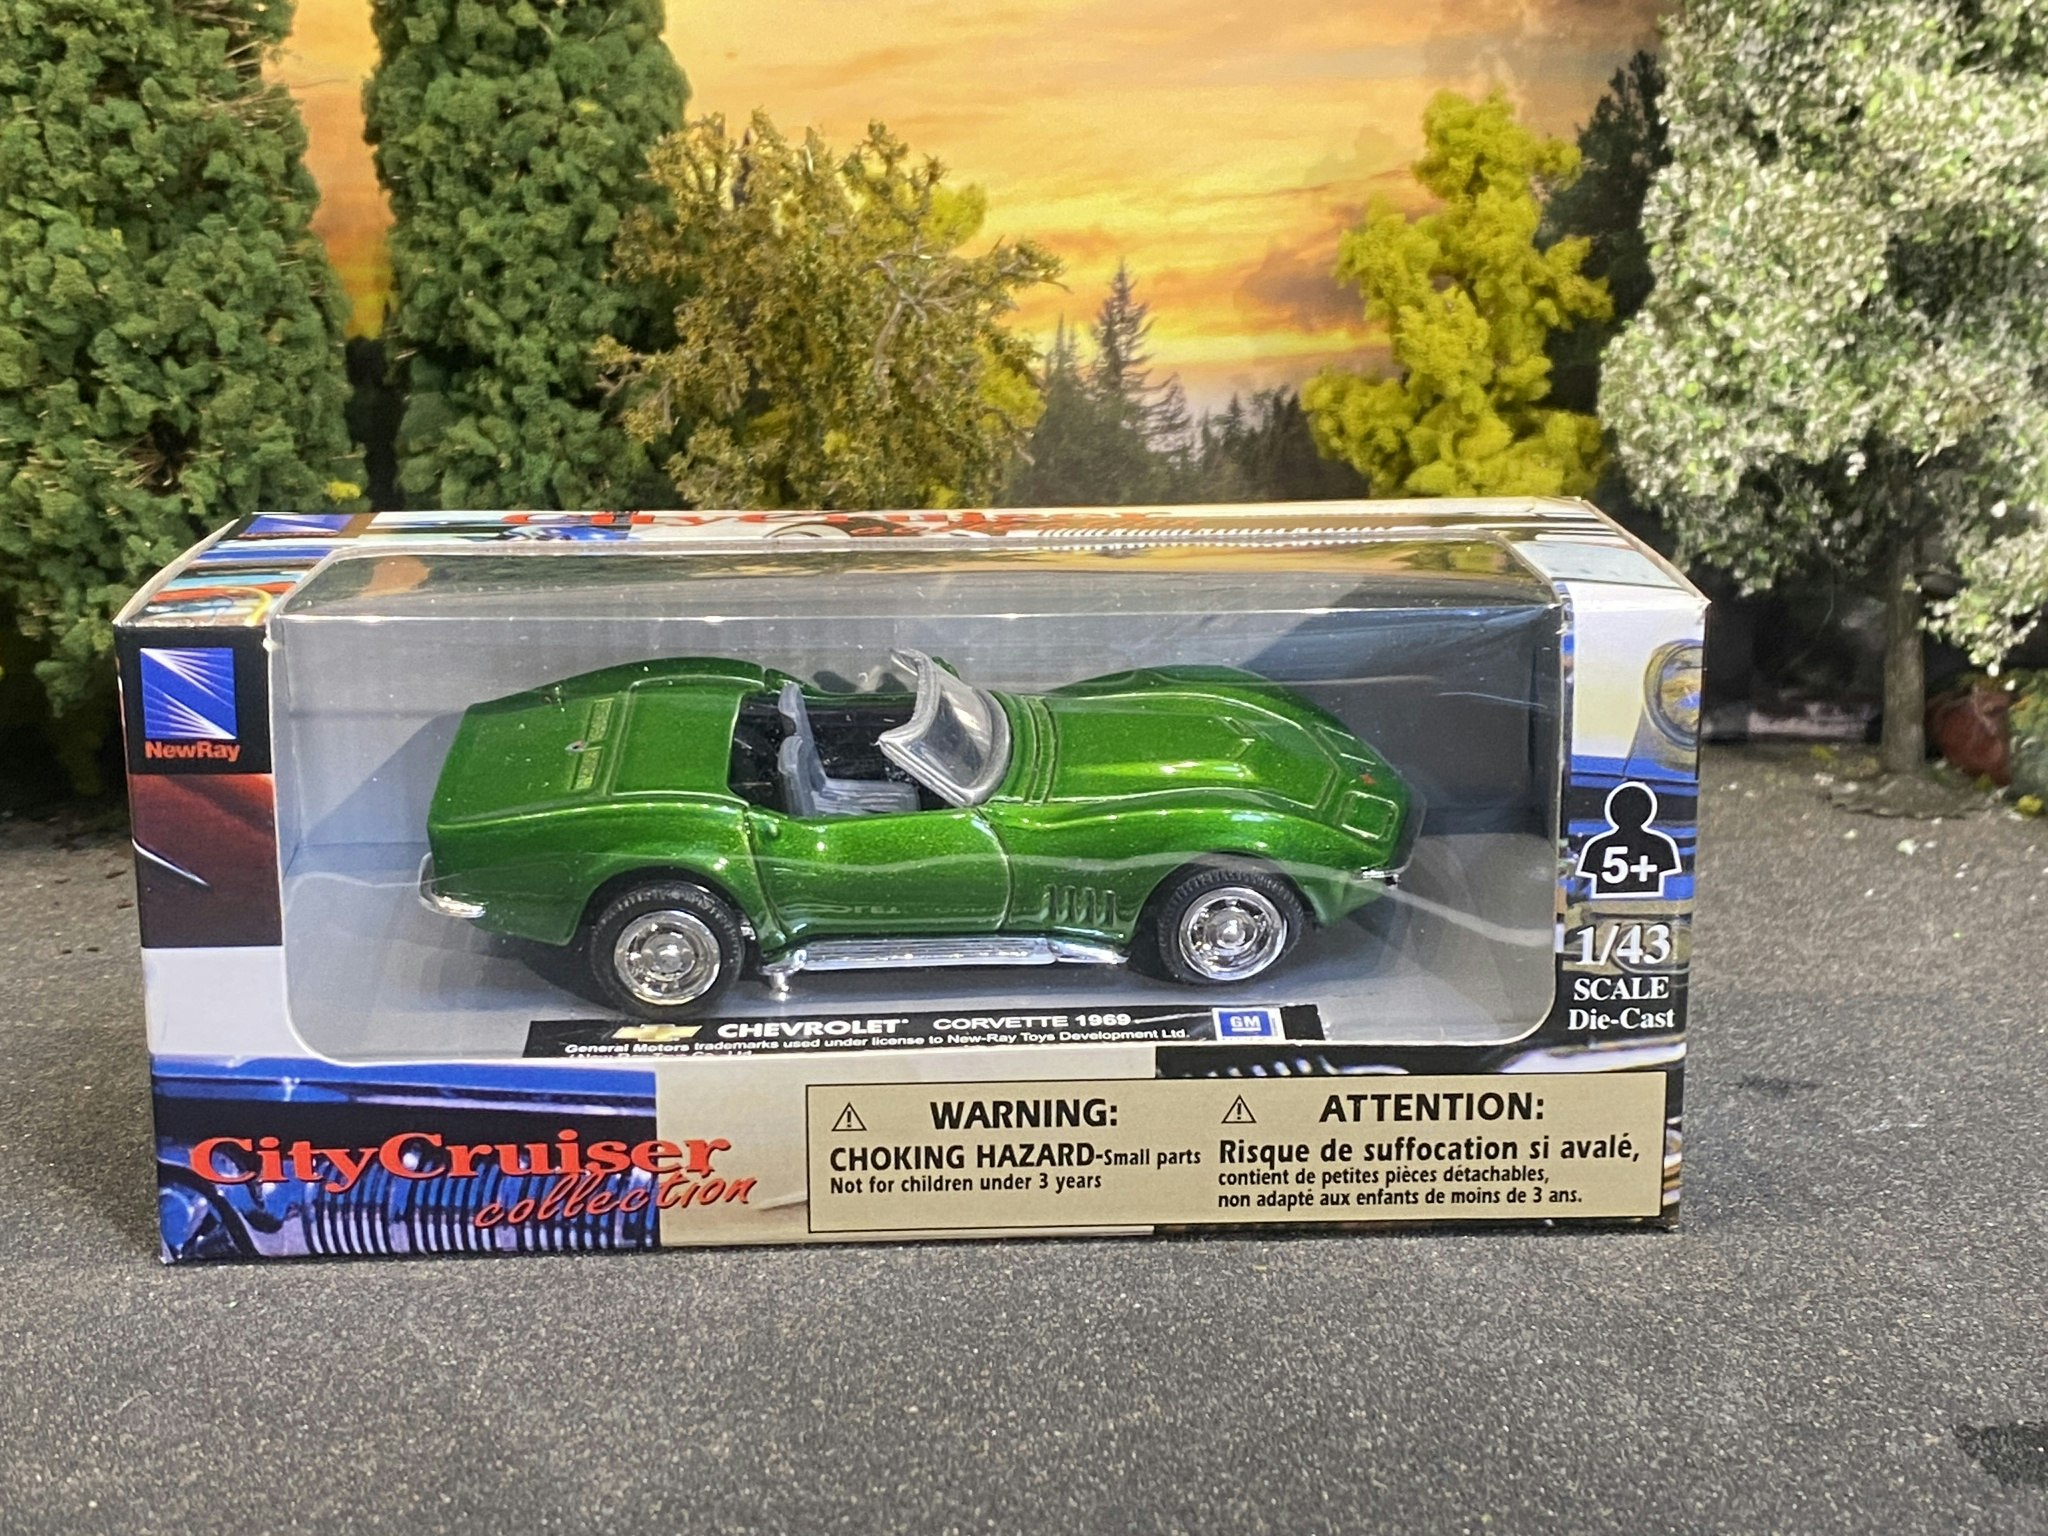 Skala 1/43 Chevrolet Corvette 69' green fr New-Ray - City Cruiser Collection